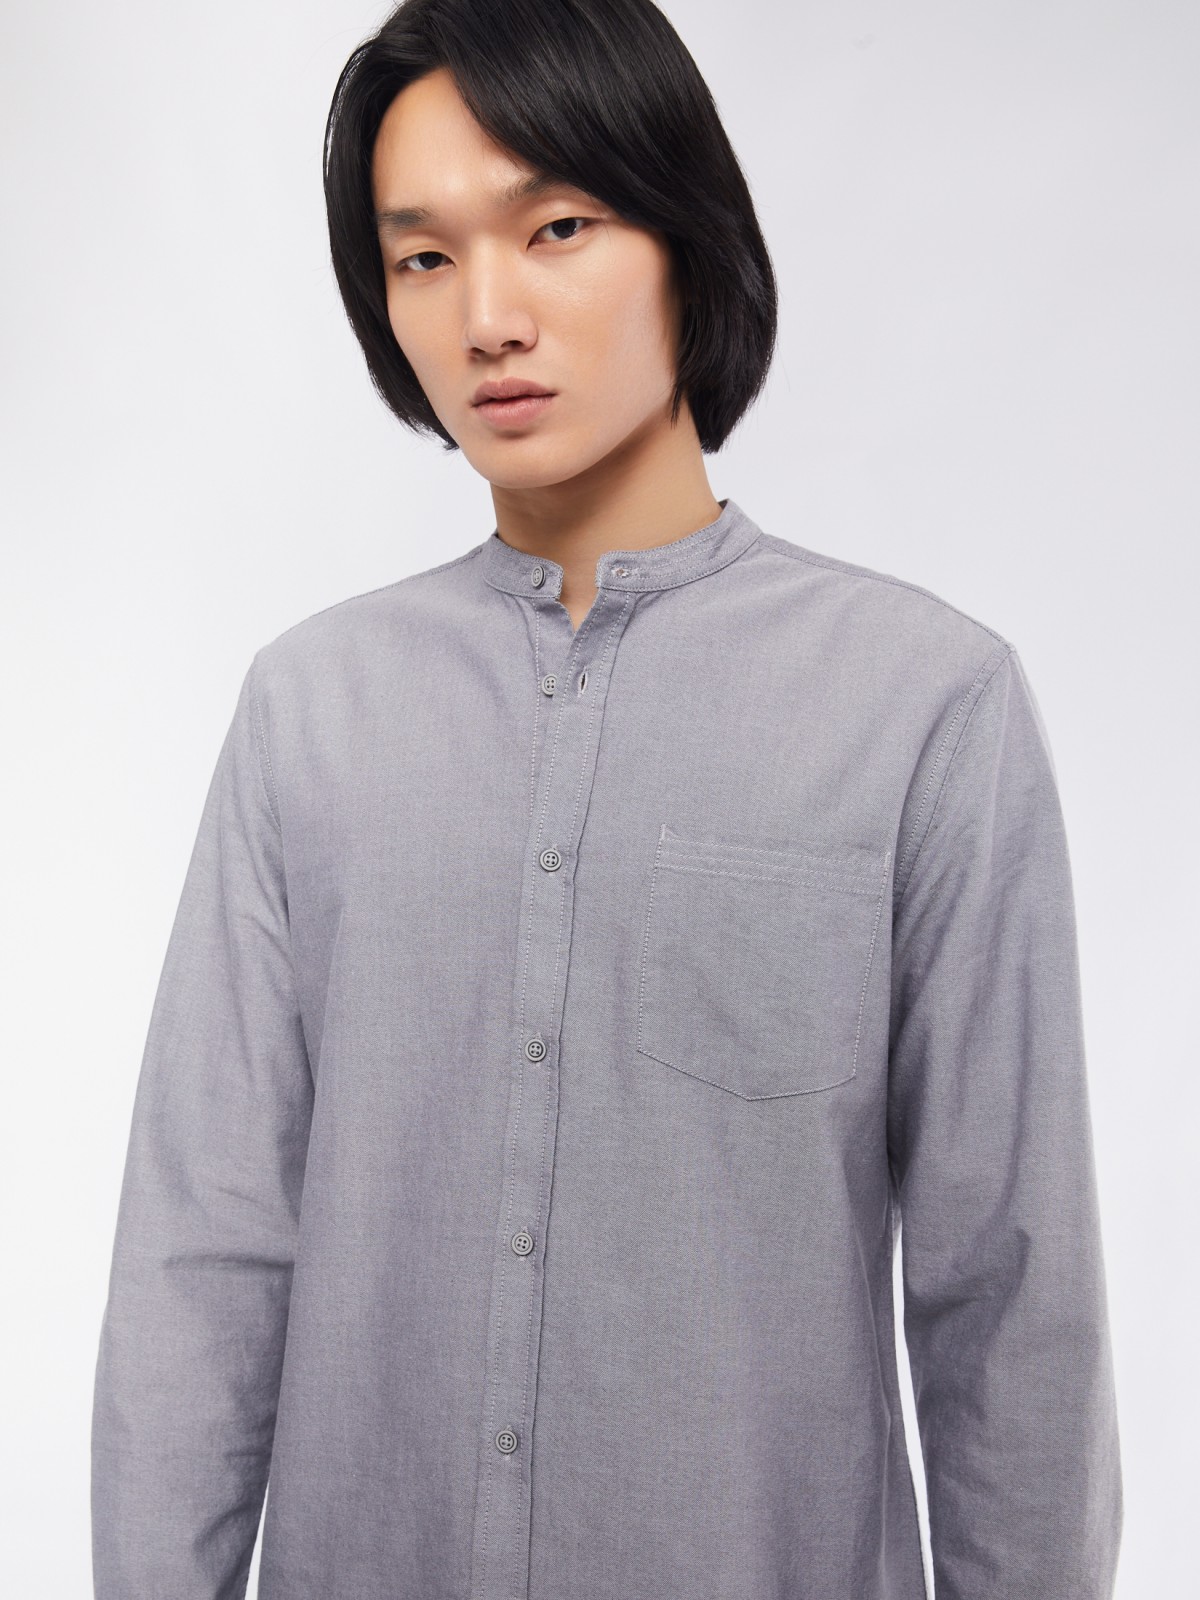 Офисная рубашка из хлопка с воротником-стойкой и длинным рукавом zolla 014122159033, цвет серый, размер M - фото 4